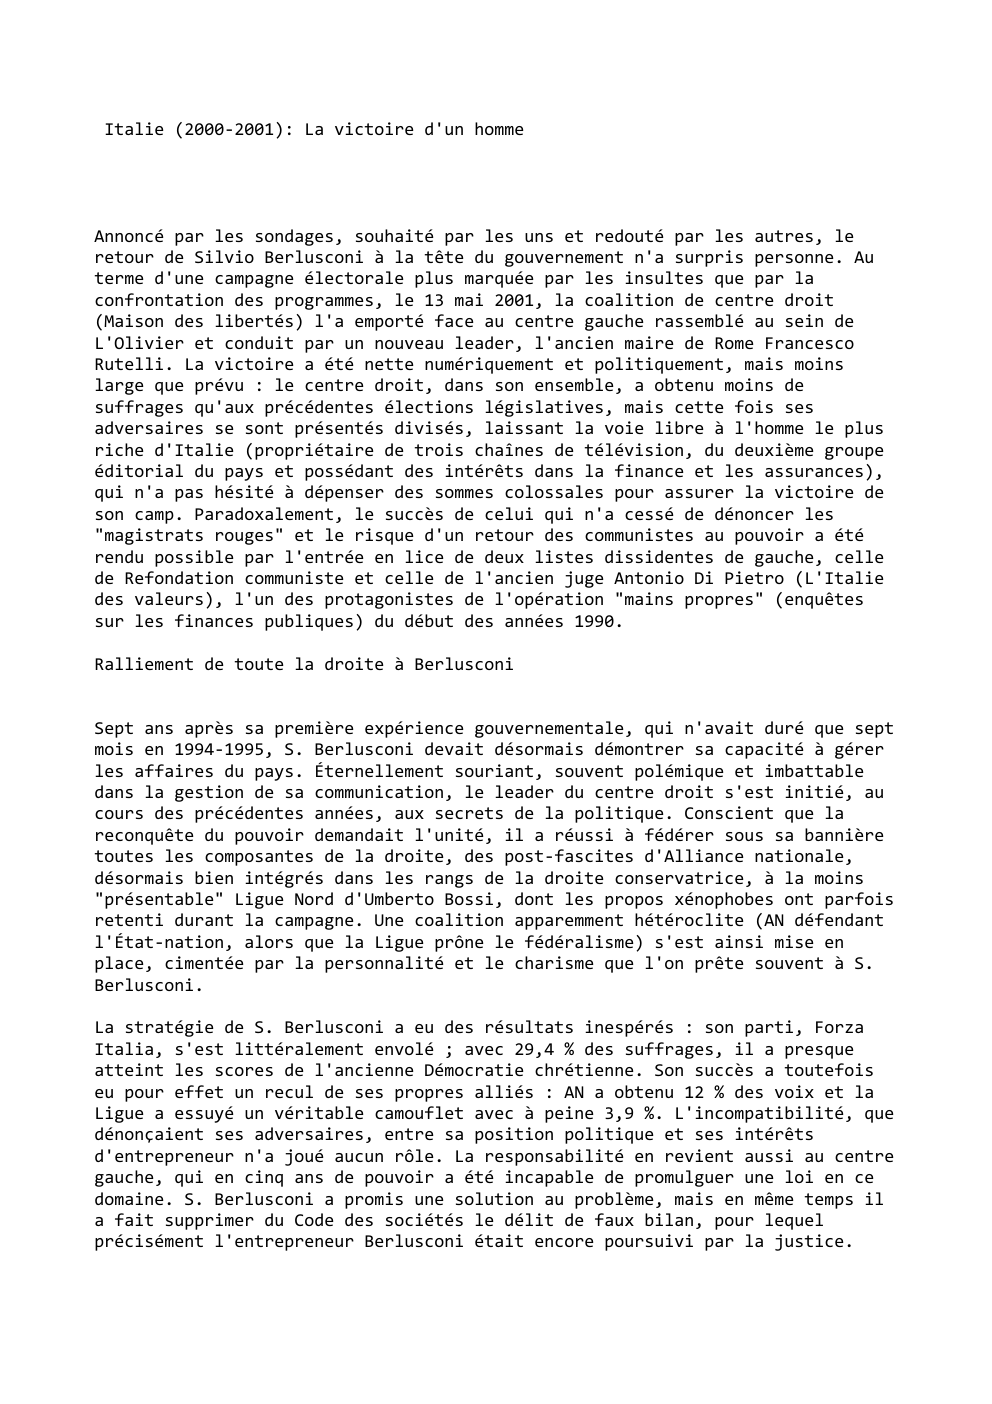 Prévisualisation du document Italie (2000-2001): La victoire d'un homme

Annoncé par les sondages, souhaité par les uns et redouté par les autres, le...